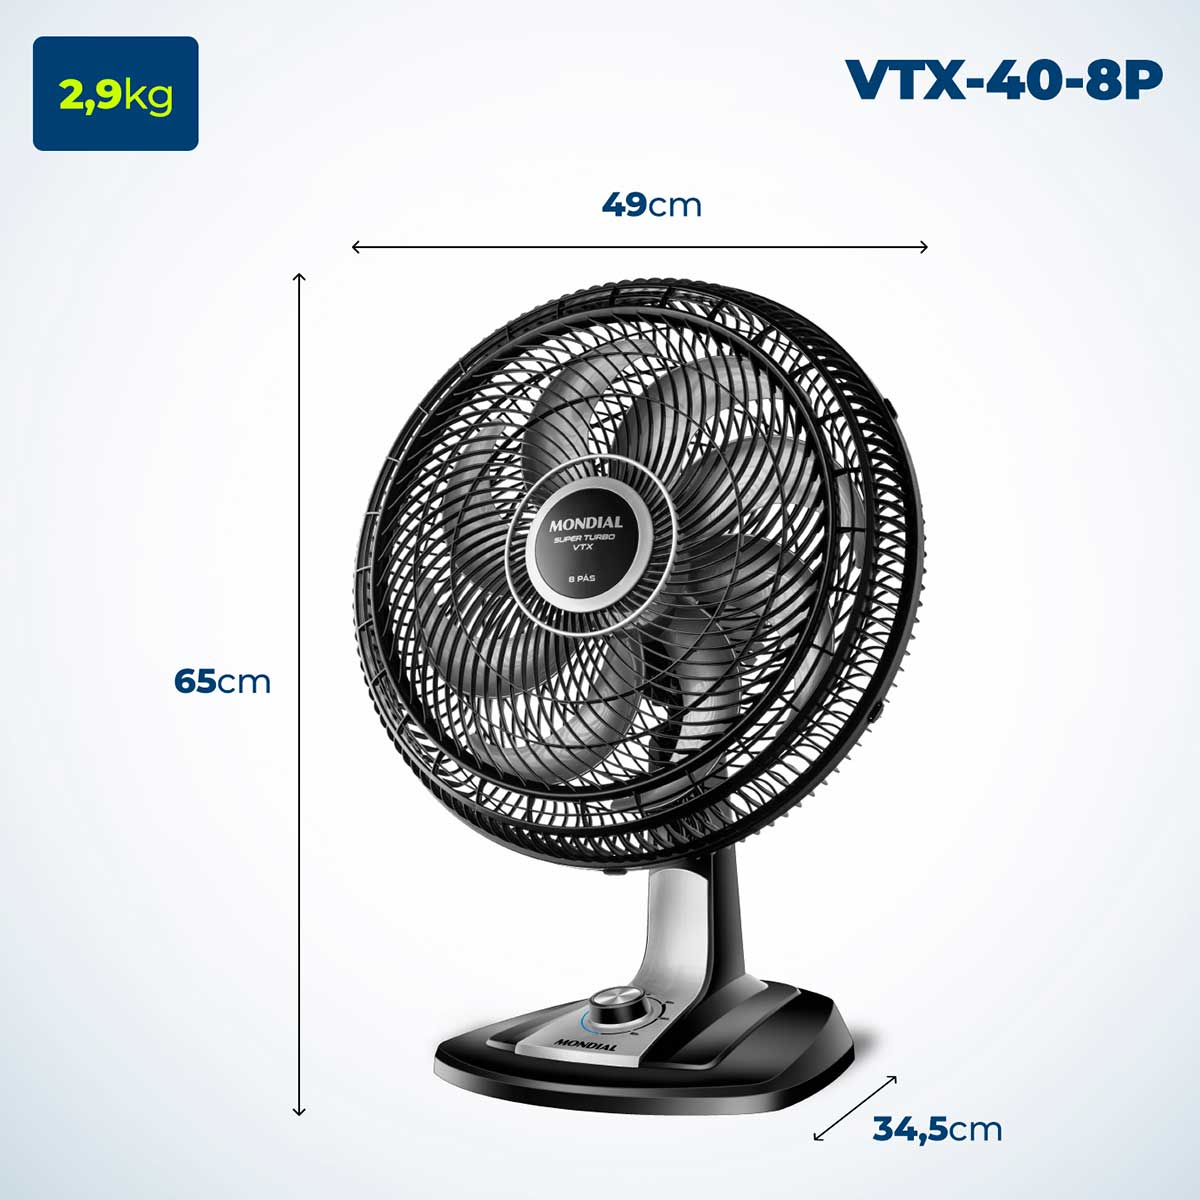 ventilador-de-mesa-mondial-vtx-40-8p-8-pas-3-velocidades-preto-prata-110v-6.jpg